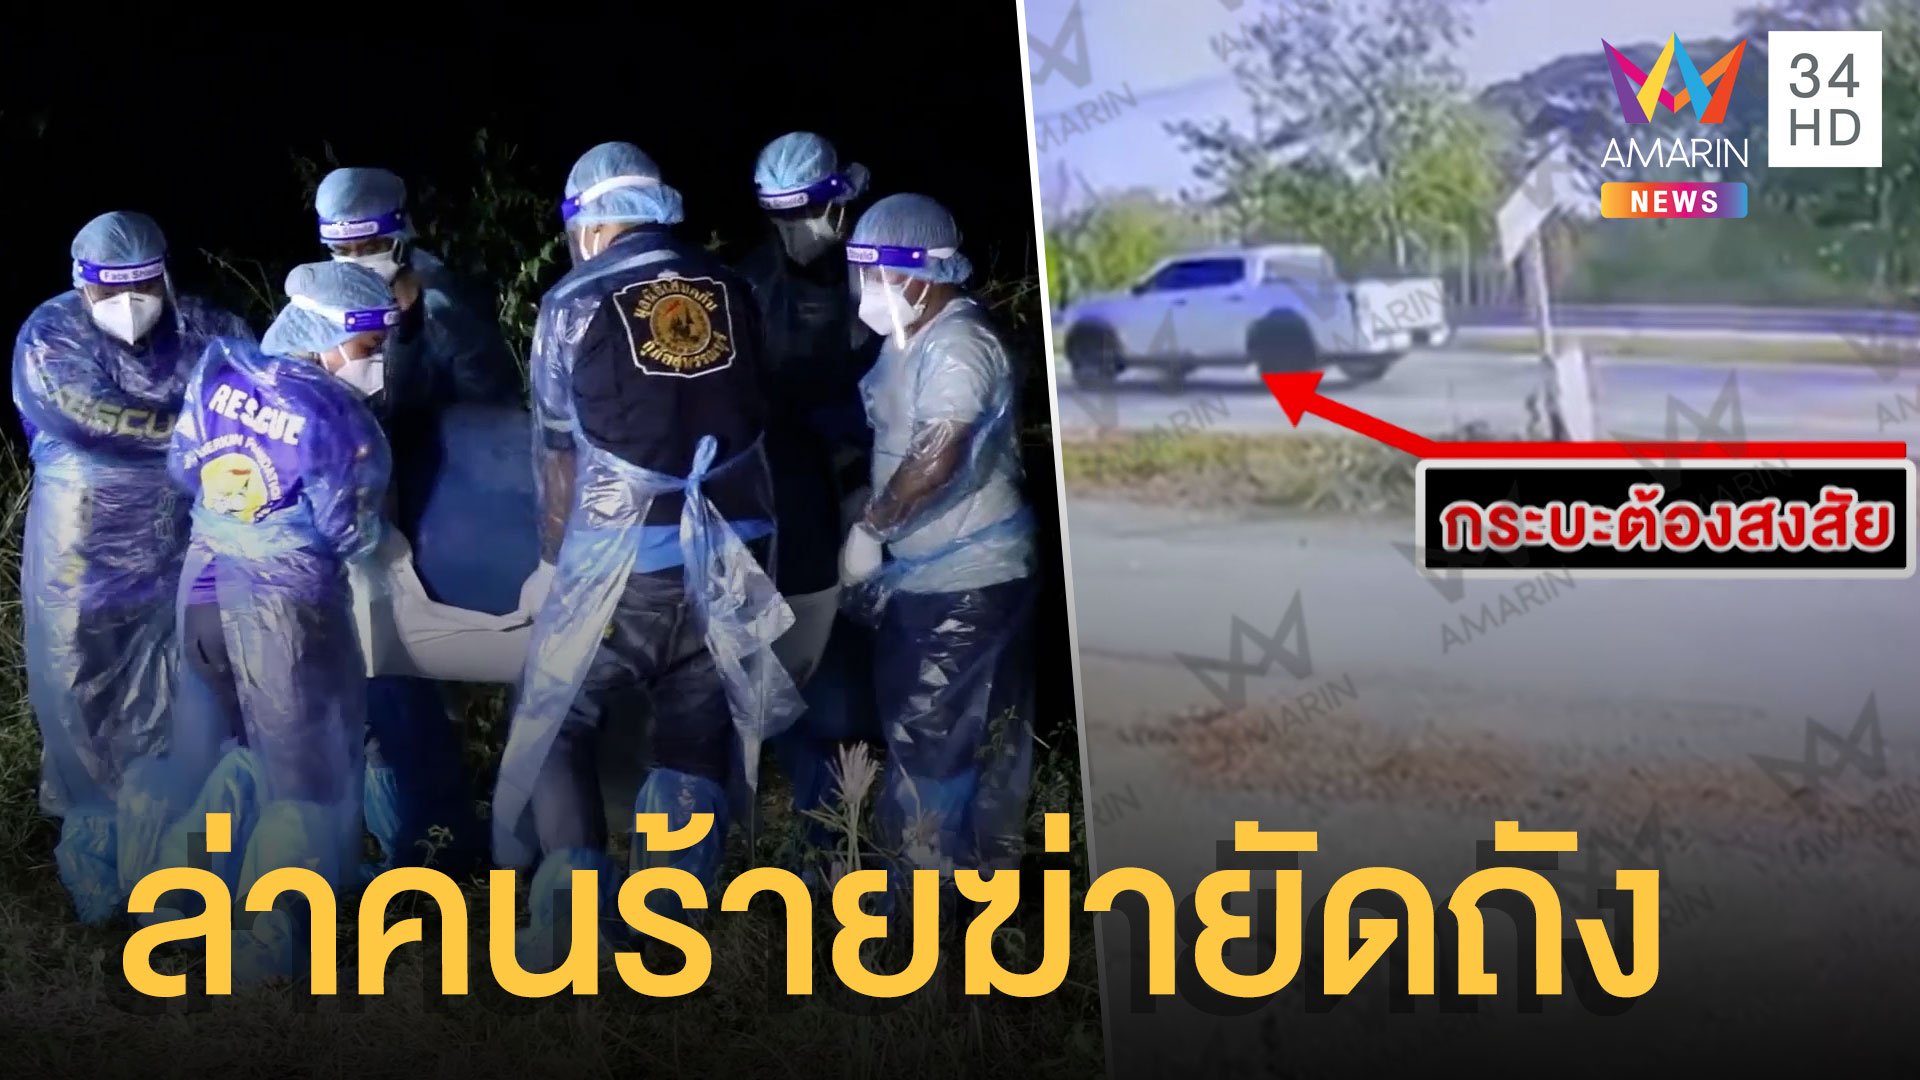 ตำรวจเร่งล่าคนร้ายฆ่าสาวยัดถังขยะ พิรุธกระบะต้องสงสัย | ข่าวเที่ยงอมรินทร์ | 15 ก.พ. 65 | AMARIN TVHD34